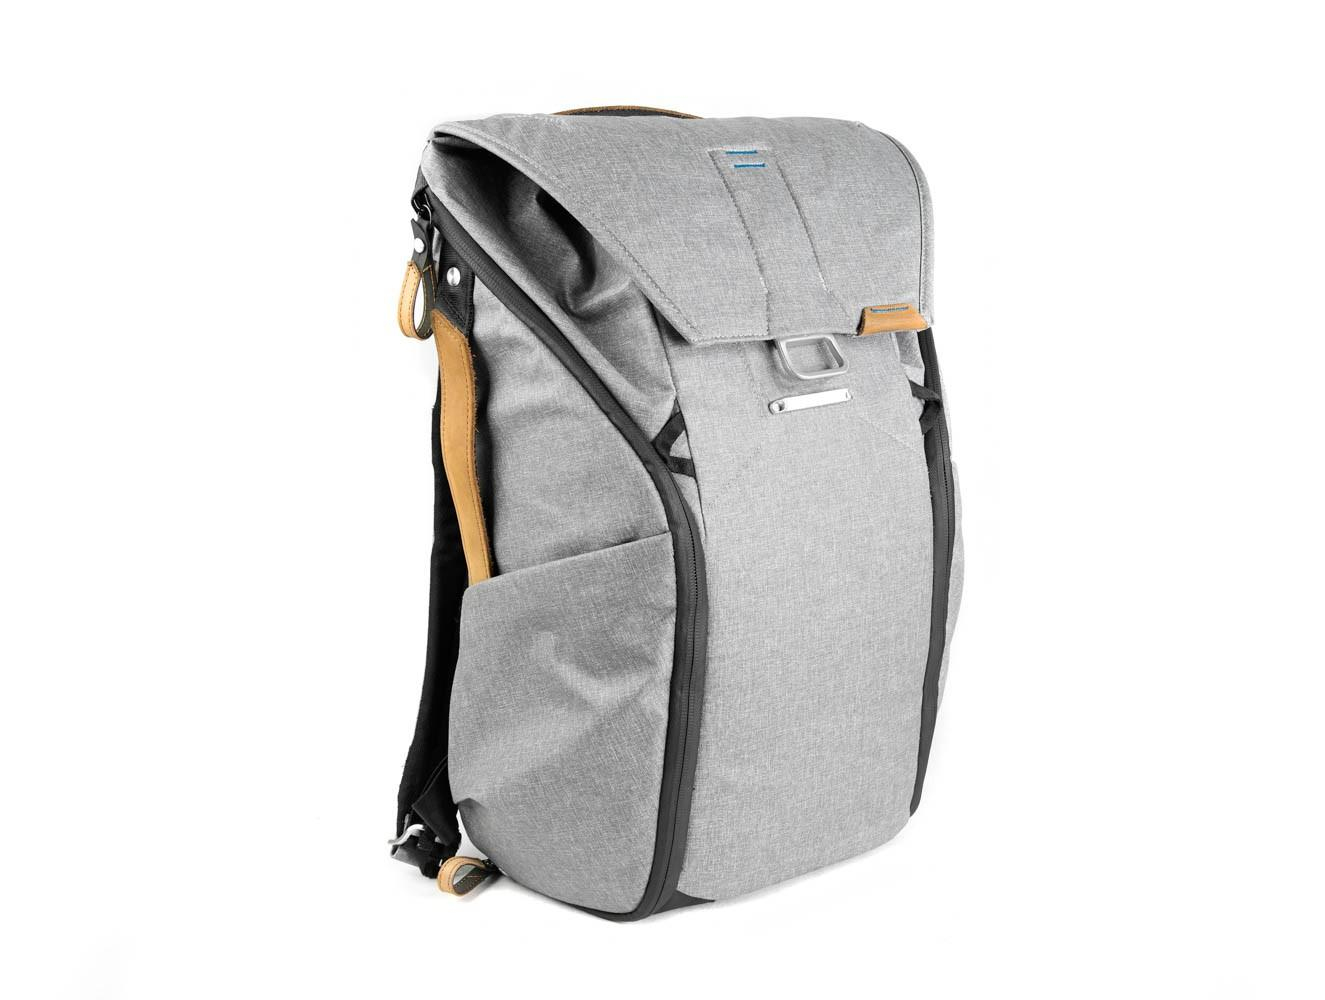 Peak Design Everyday Backpack 20L Ash